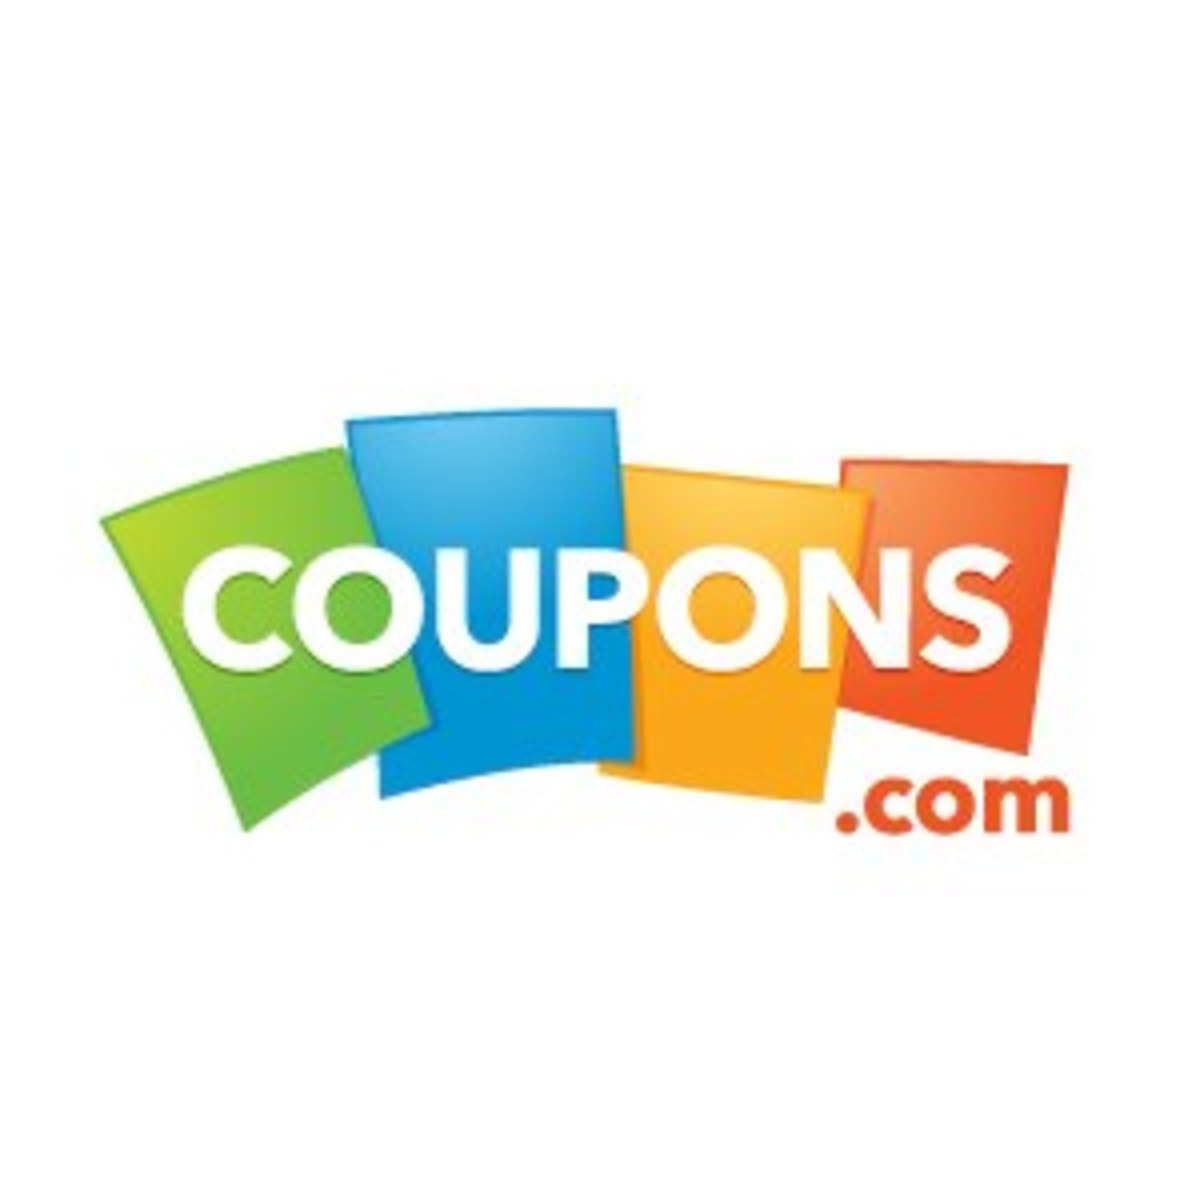 coupons.com